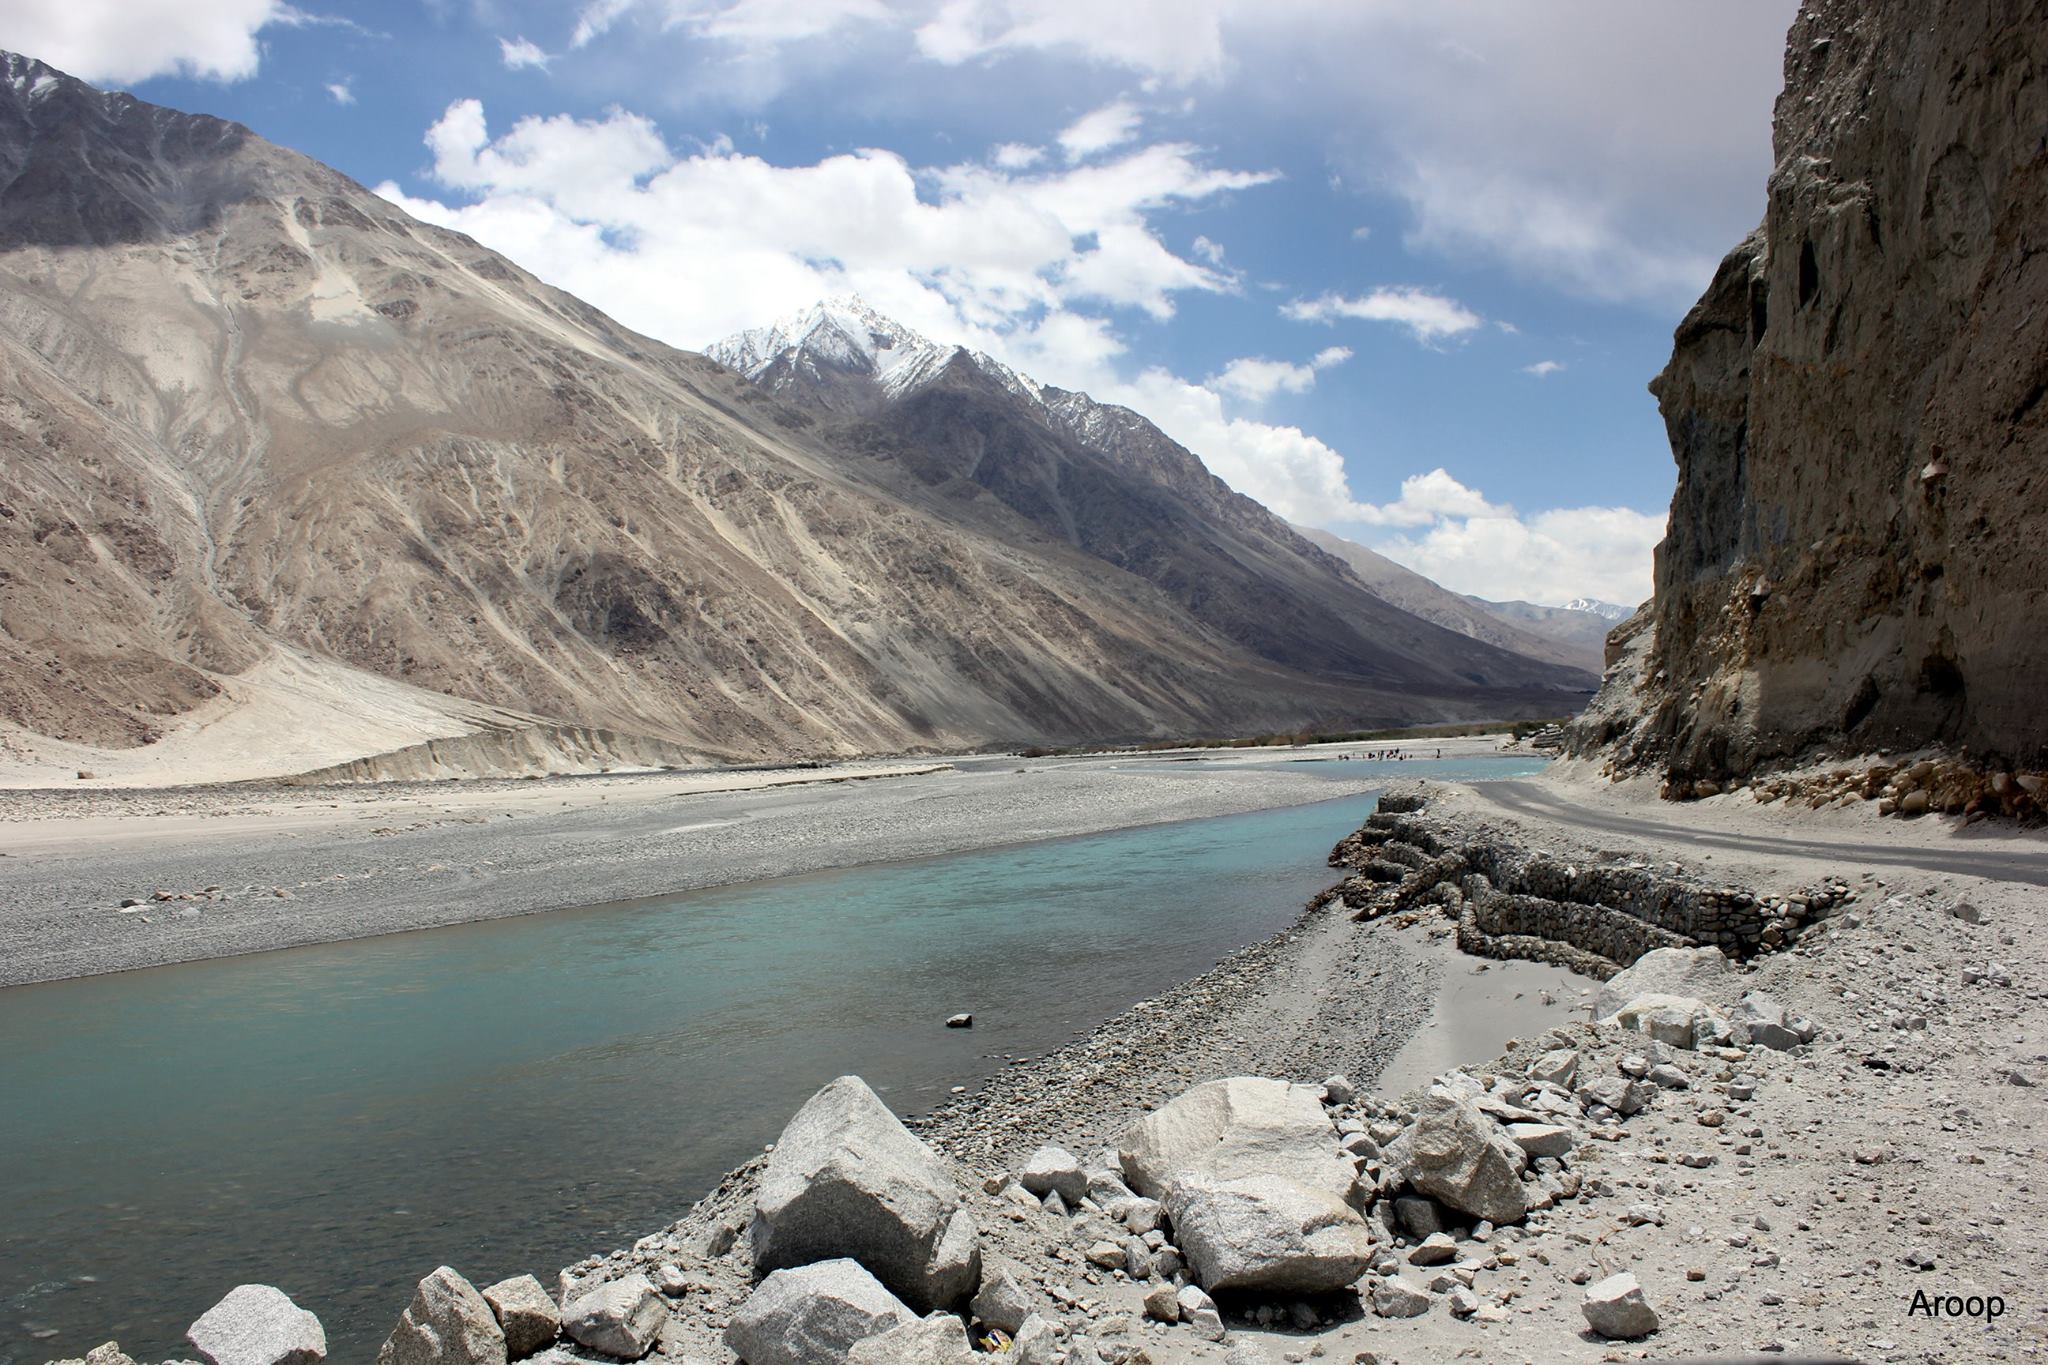 Shayuk River at Nabura Valley, Ladakh.